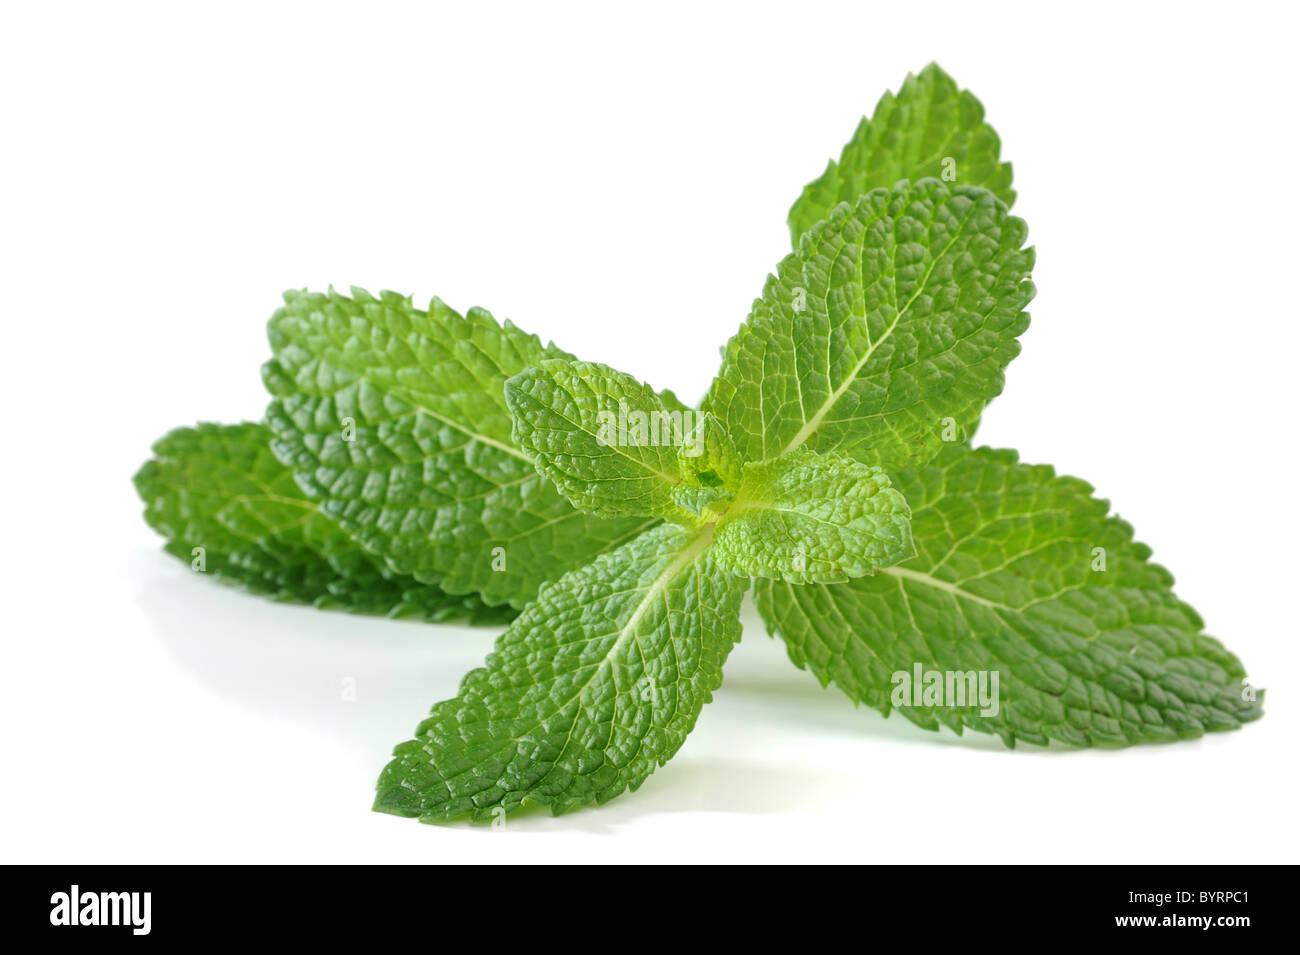 Image of fresh mint on white background Stock Photo